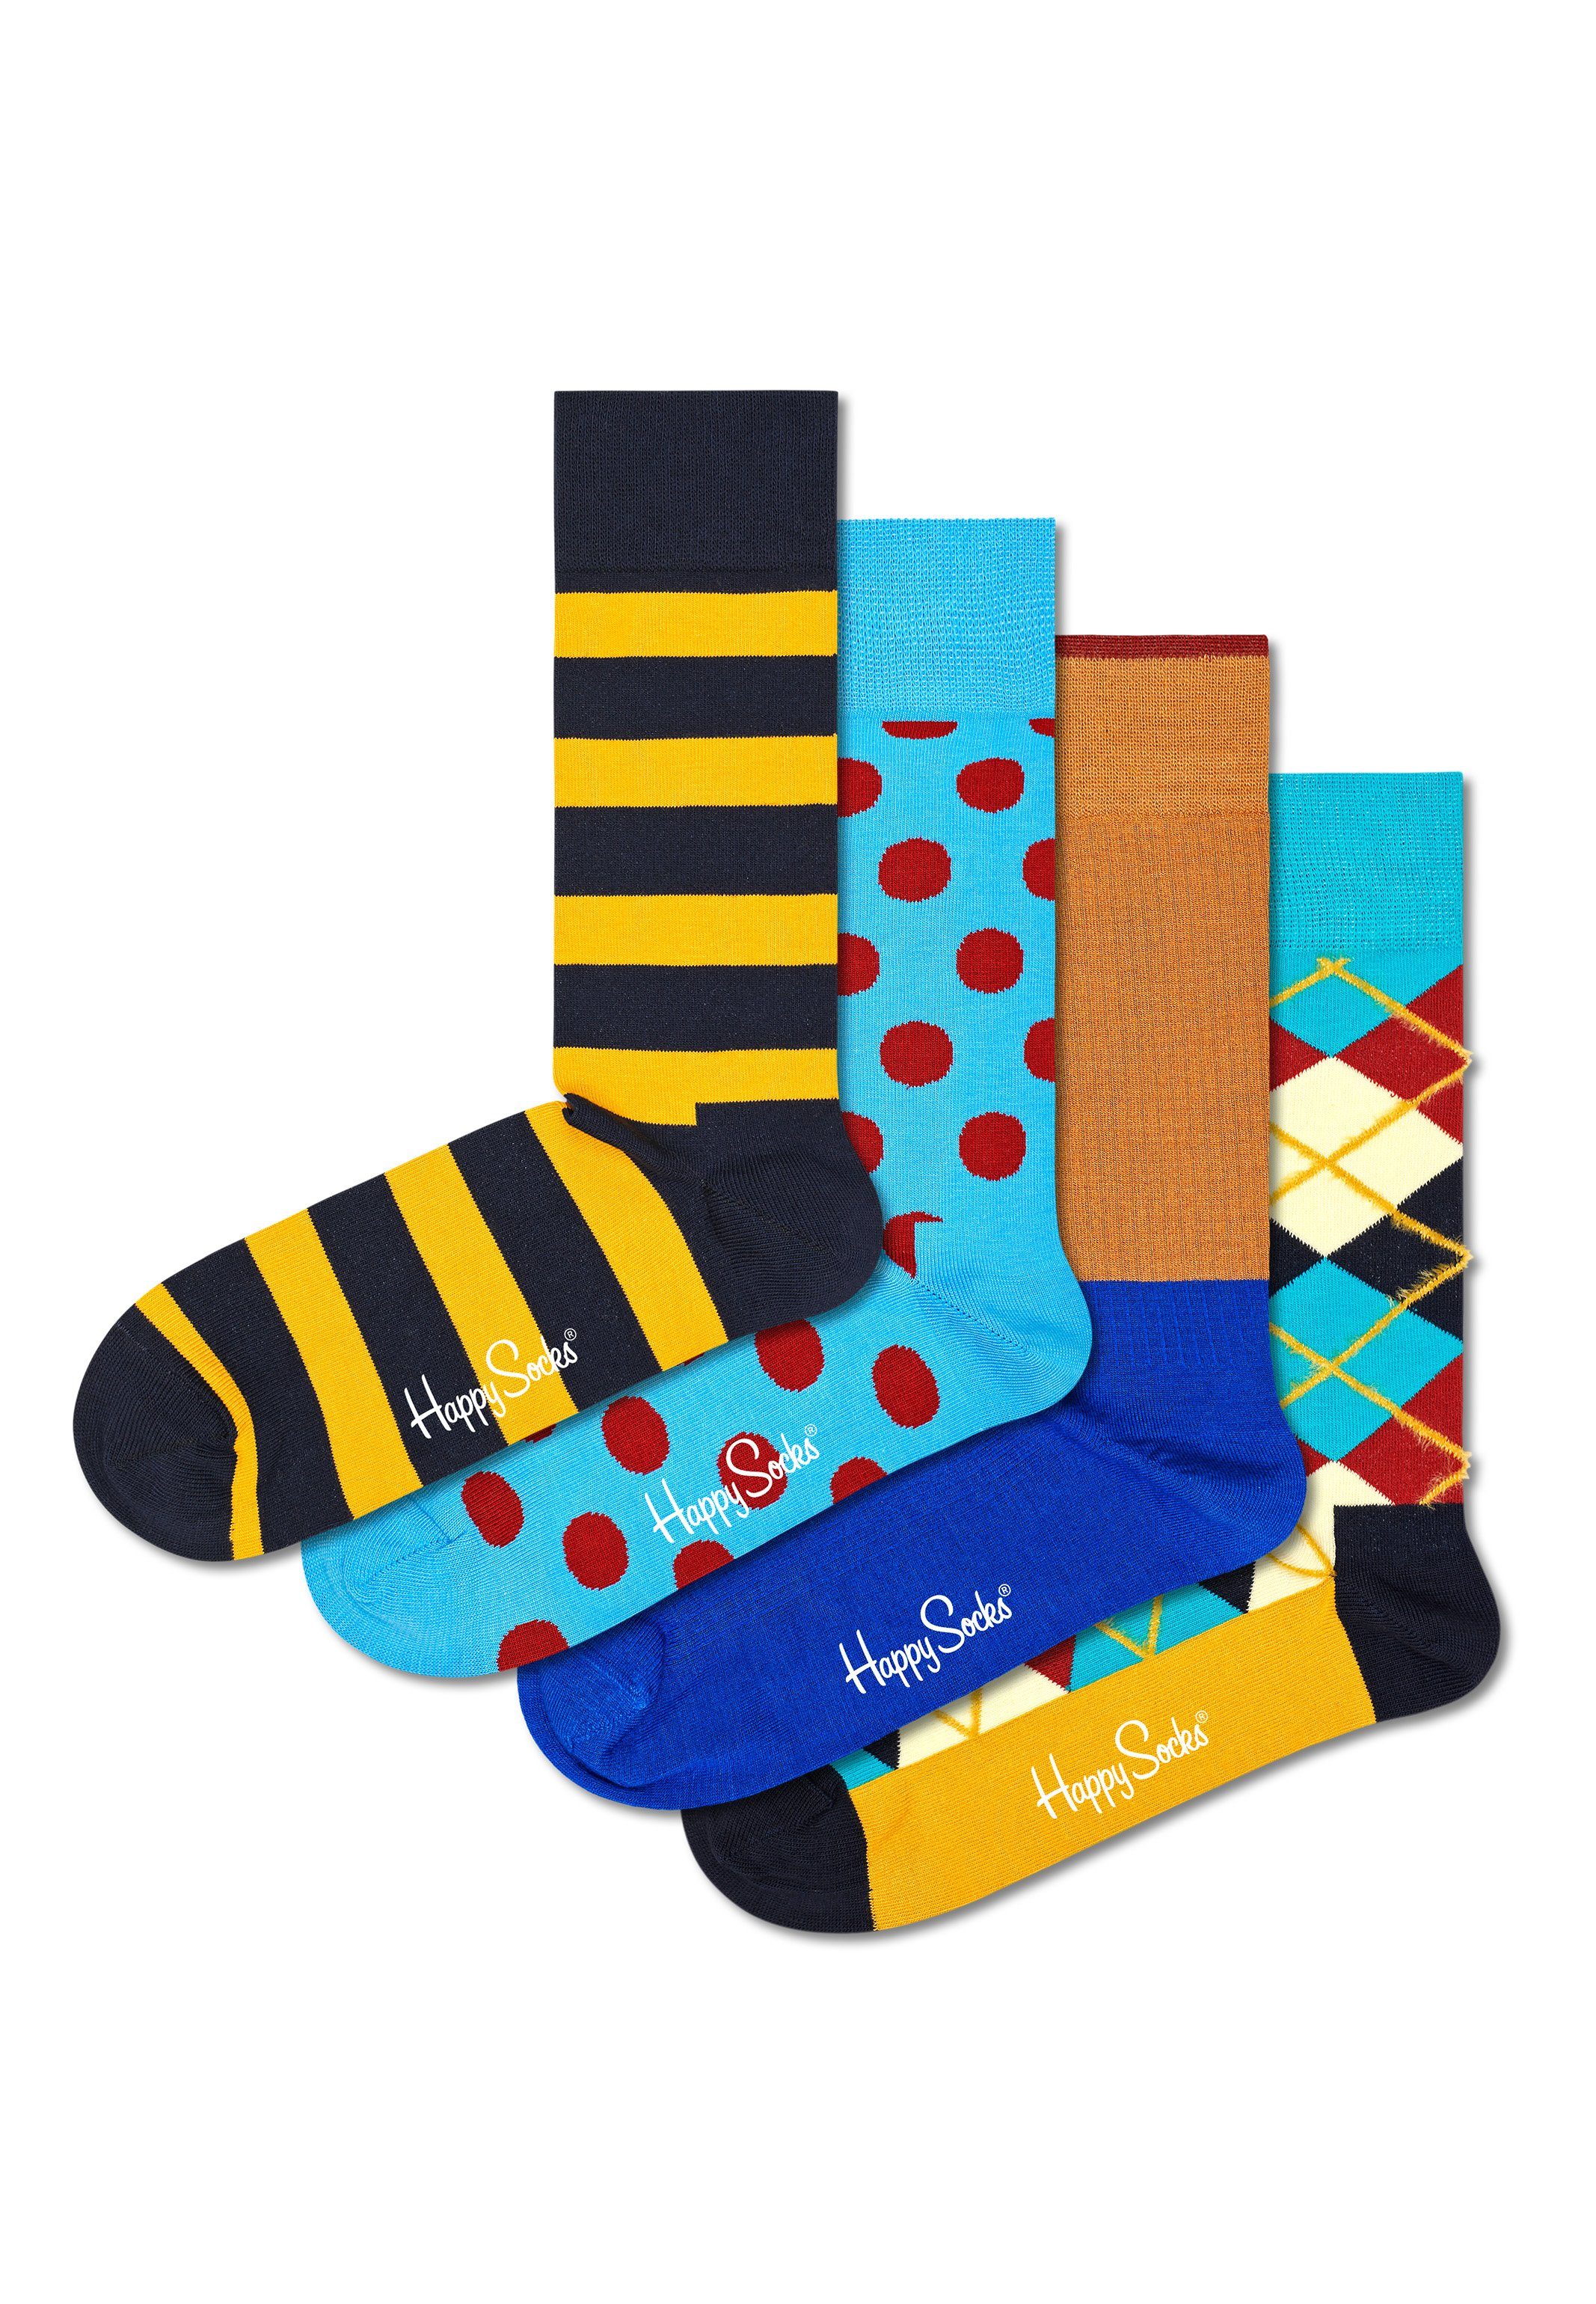 Happy Socks Langsocken Classics Geschenk Box (Spar-Set, 4-Paar) 4 Paar Socken - Baumwolle - 4 Paar bunte Socken in einer Geschenkbox